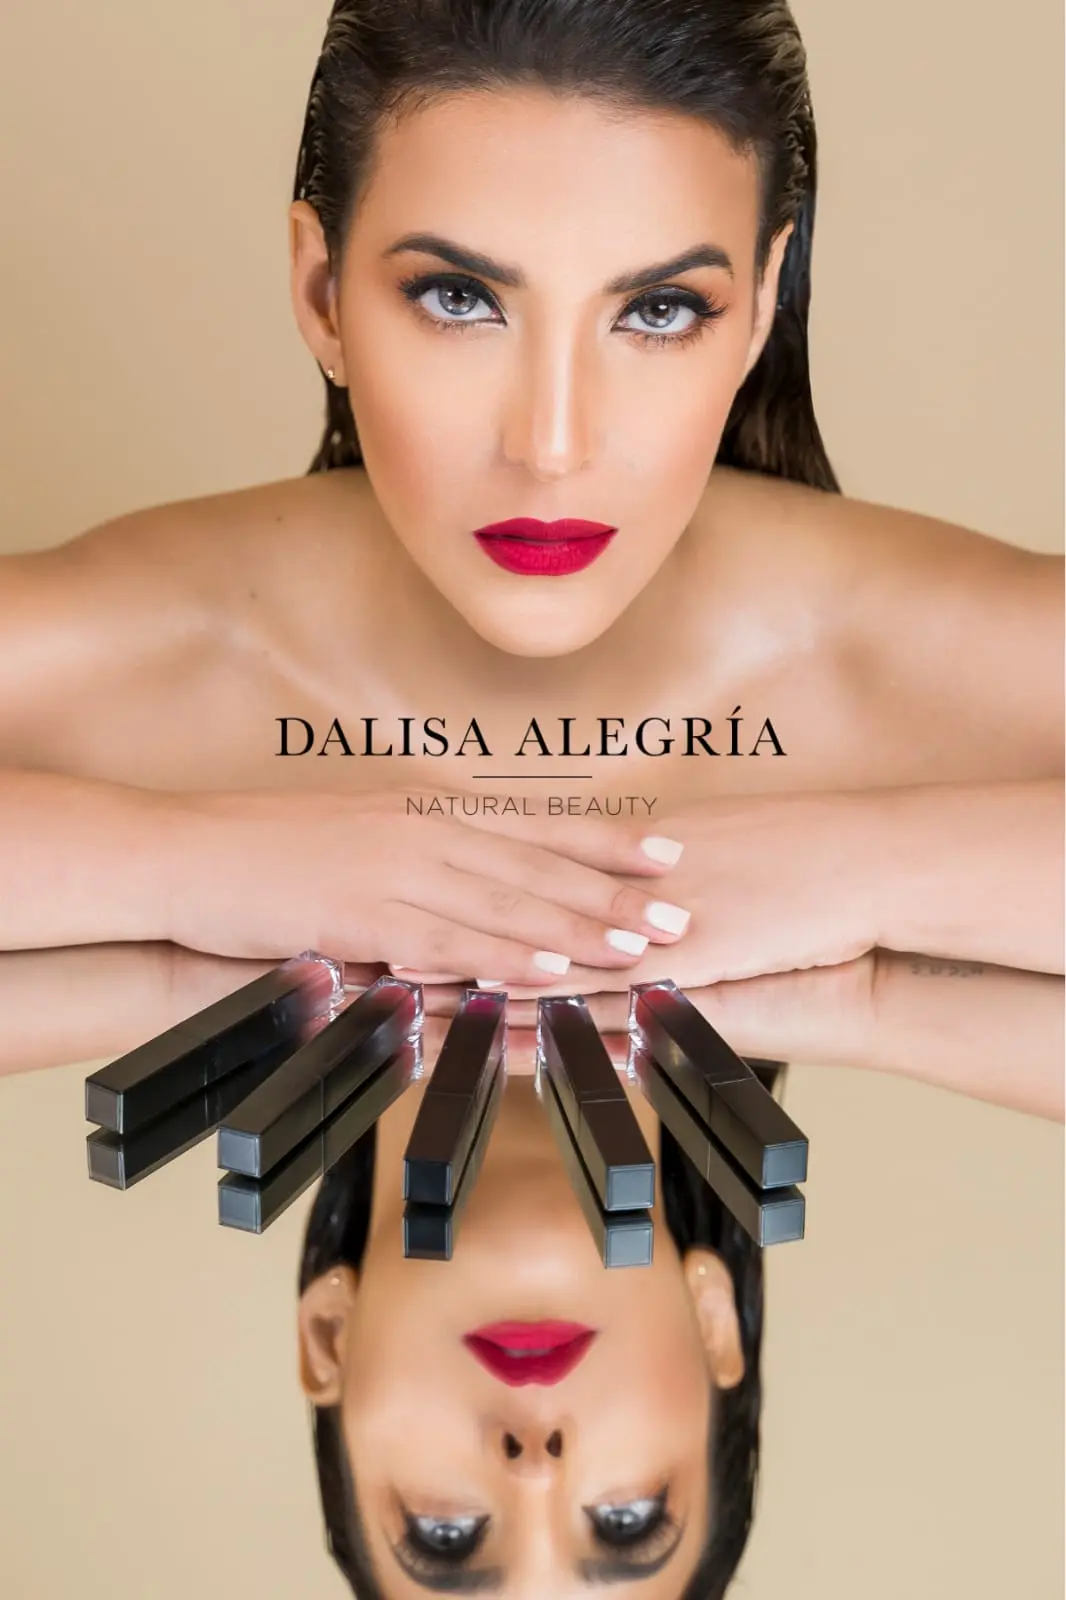 Dalisa Alegría lanza línea de labiales “Natural Beauty”